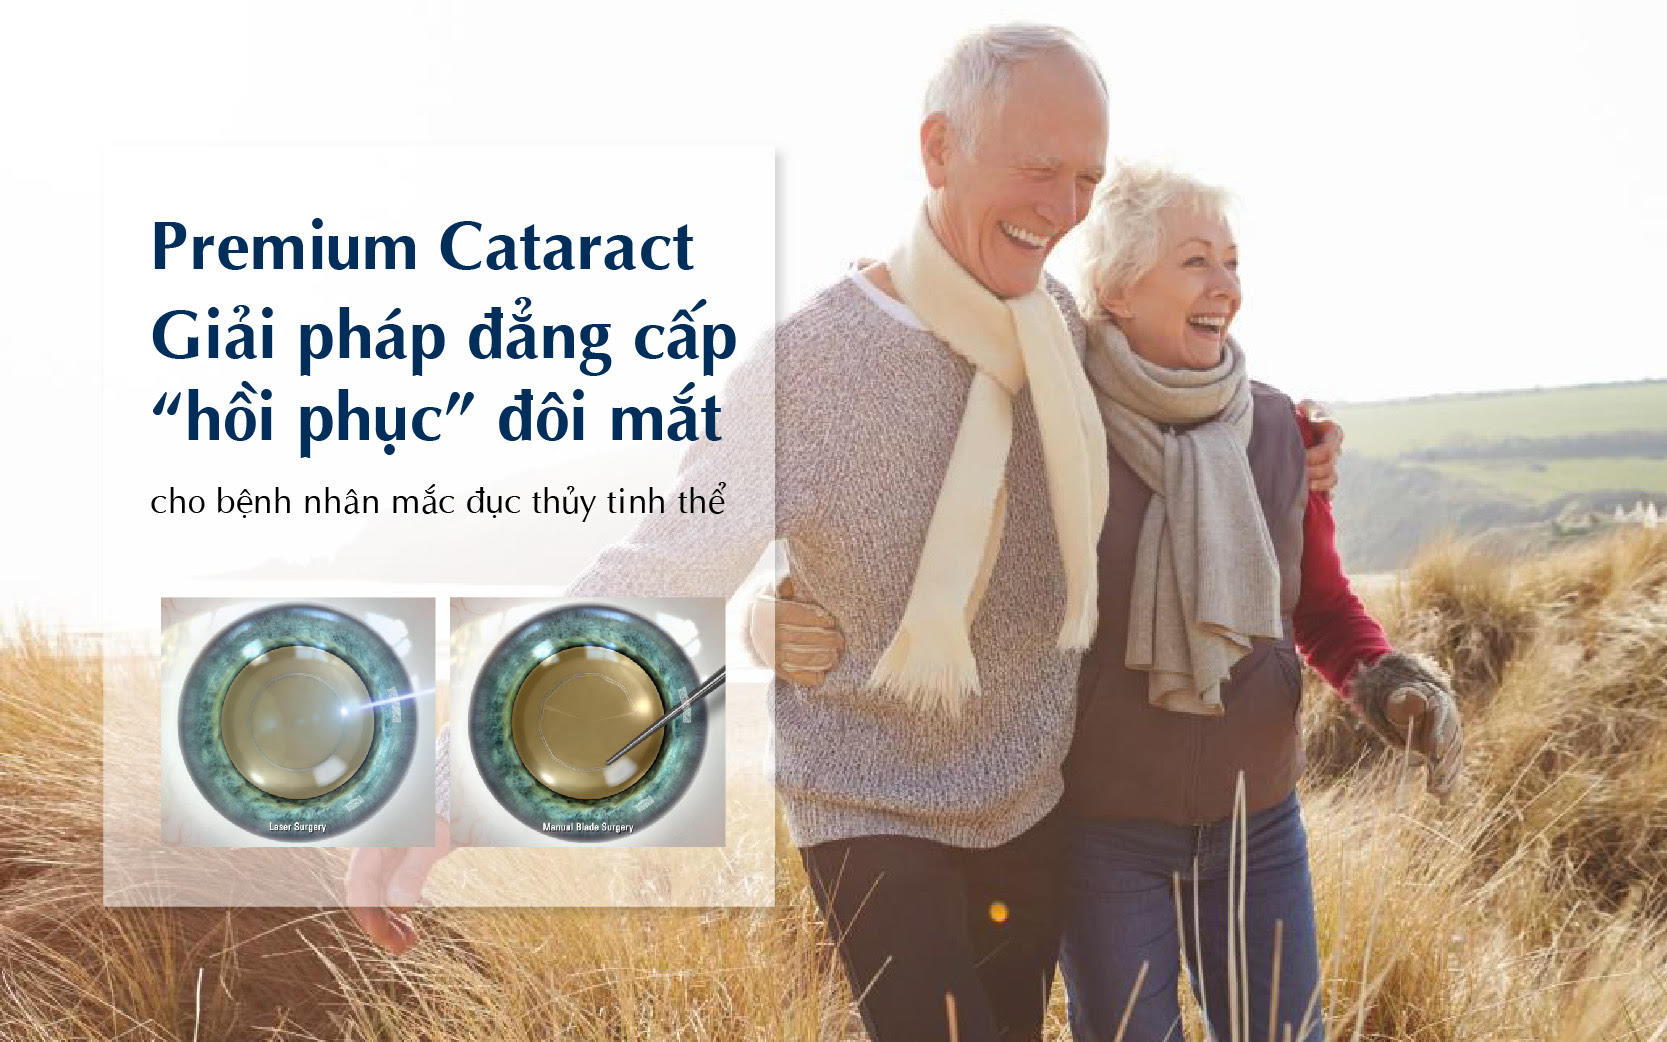 Premium Cataract - Giải pháp đẳng cấp &#34;hồi phục” đôi mắt cho bệnh nhân mắc đục thủy tinh thể - 1